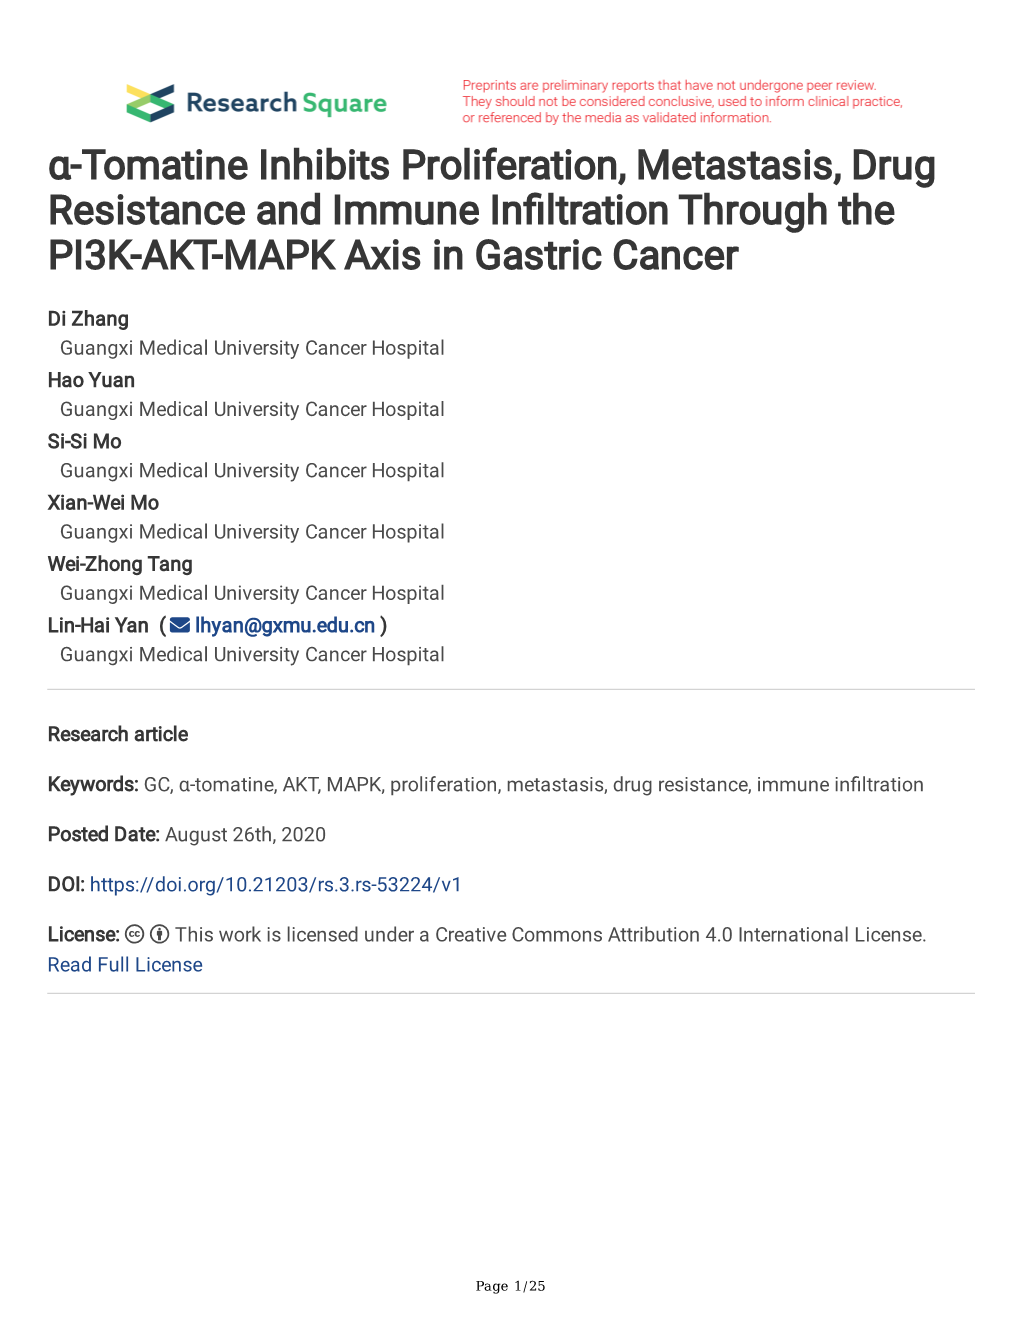 Α-Tomatine Inhibits Proliferation, Metastasis, Drug Resistance and Immune Infltration Through the PI3K-AKT-MAPK Axis in Gastric Cancer